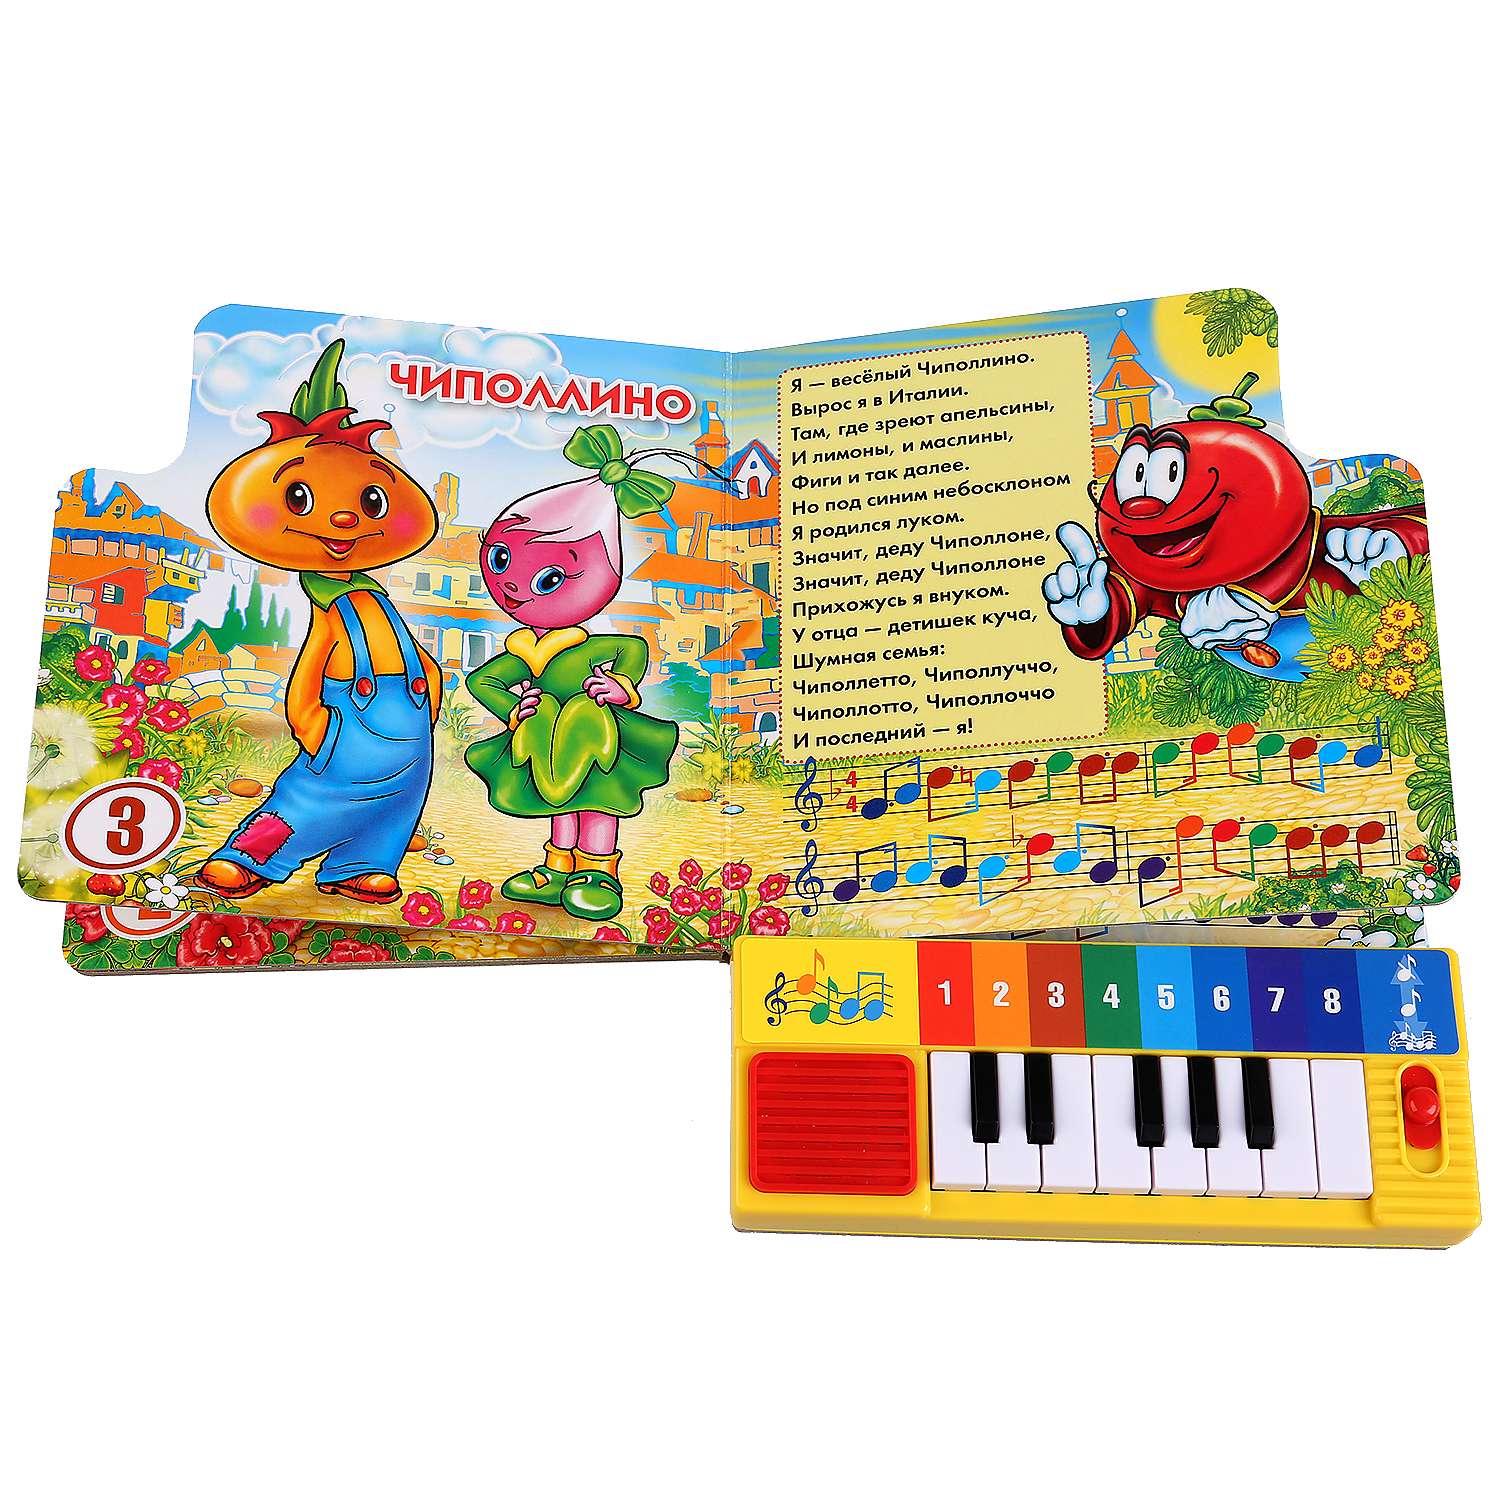 Детская песня 1 5 года. Книга пианино для малышей. Книжка с пианино для малышей. Книжка пианино Умка. Музыкальные книги для детей.